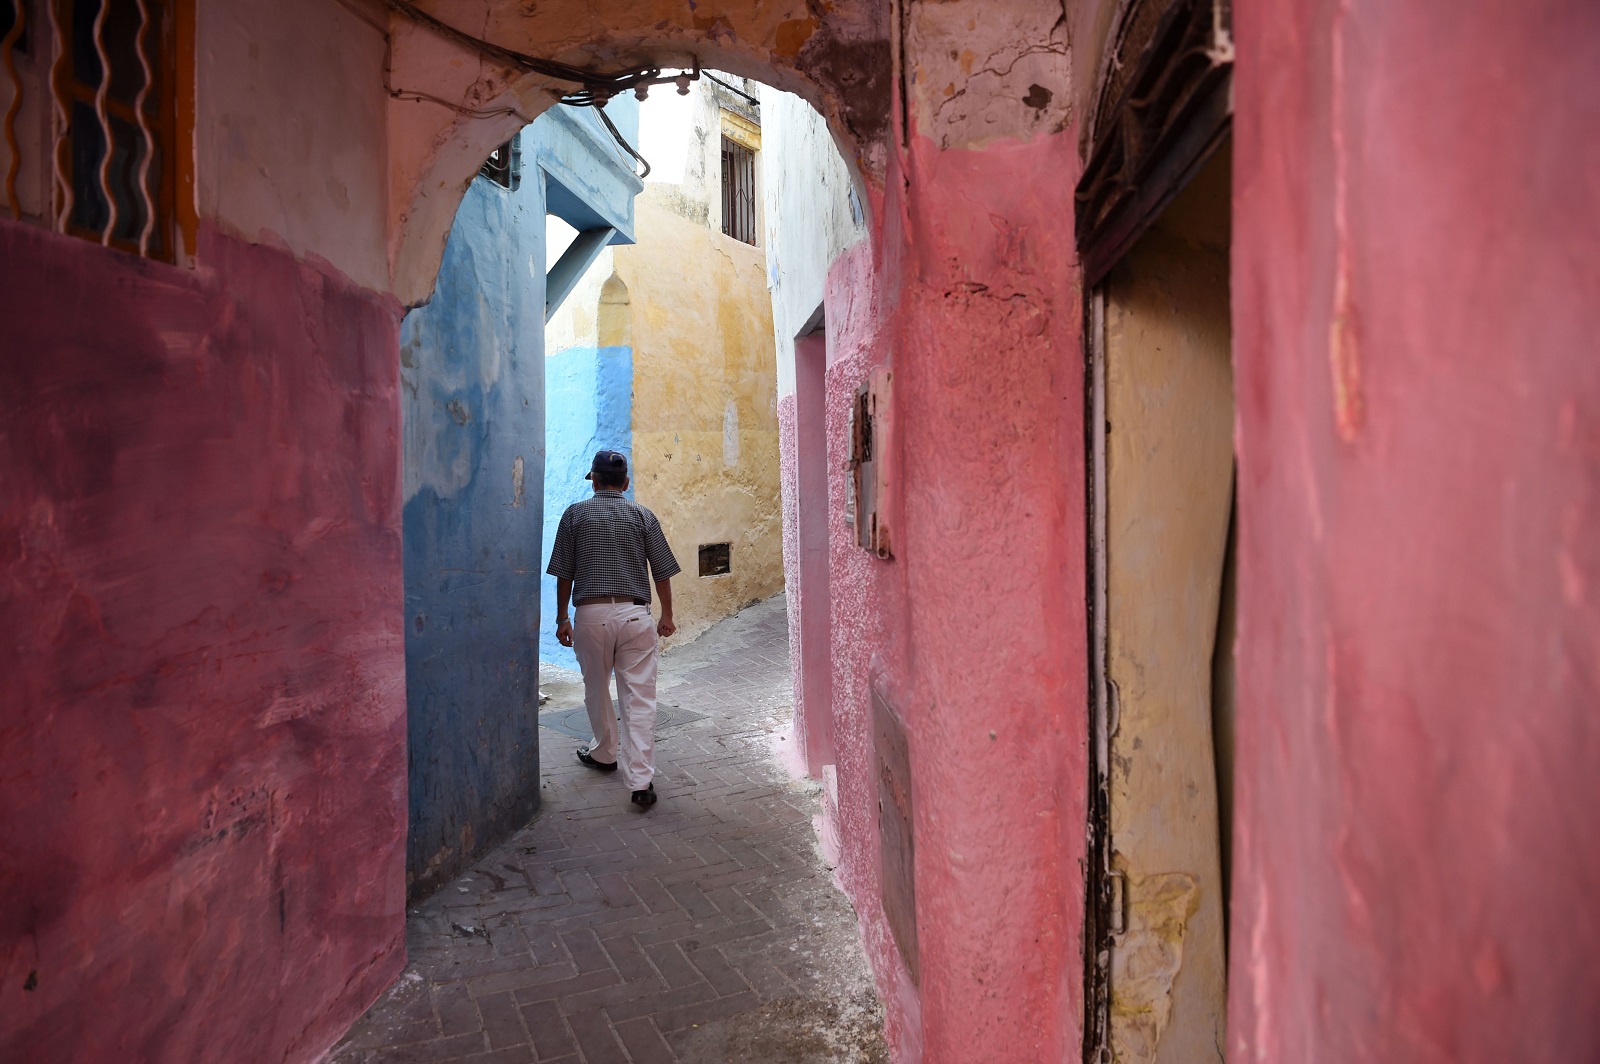 الأصالة والحداثة تسيران جنبا إلى جنب في طنجة المغربية